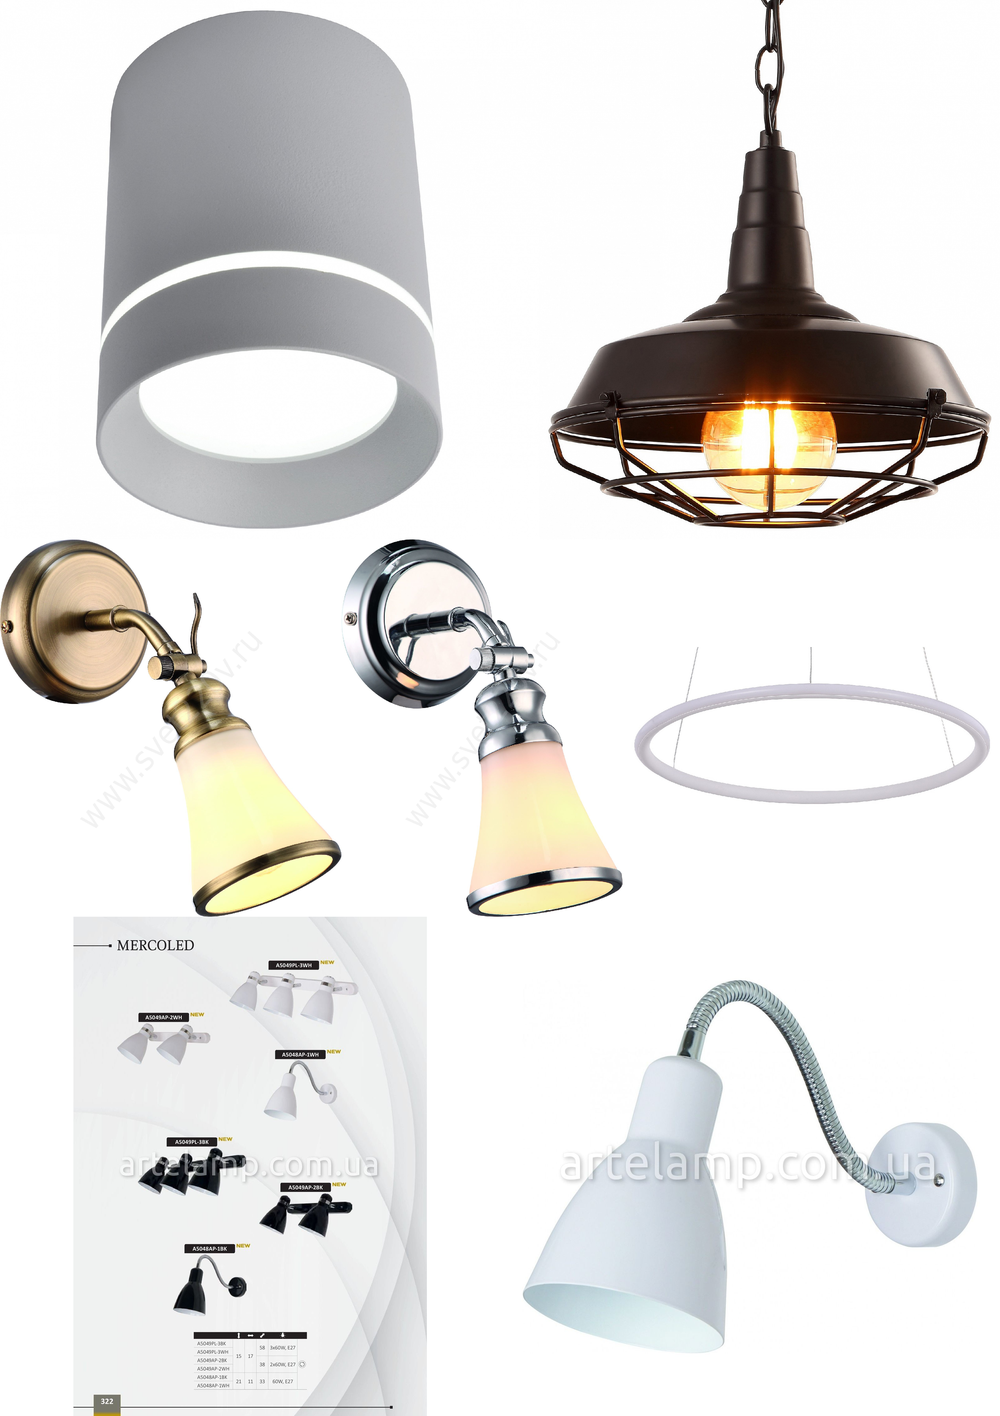 « три лампочки». Arte Lamp серия Mercoled артикул A5049PL-3BK